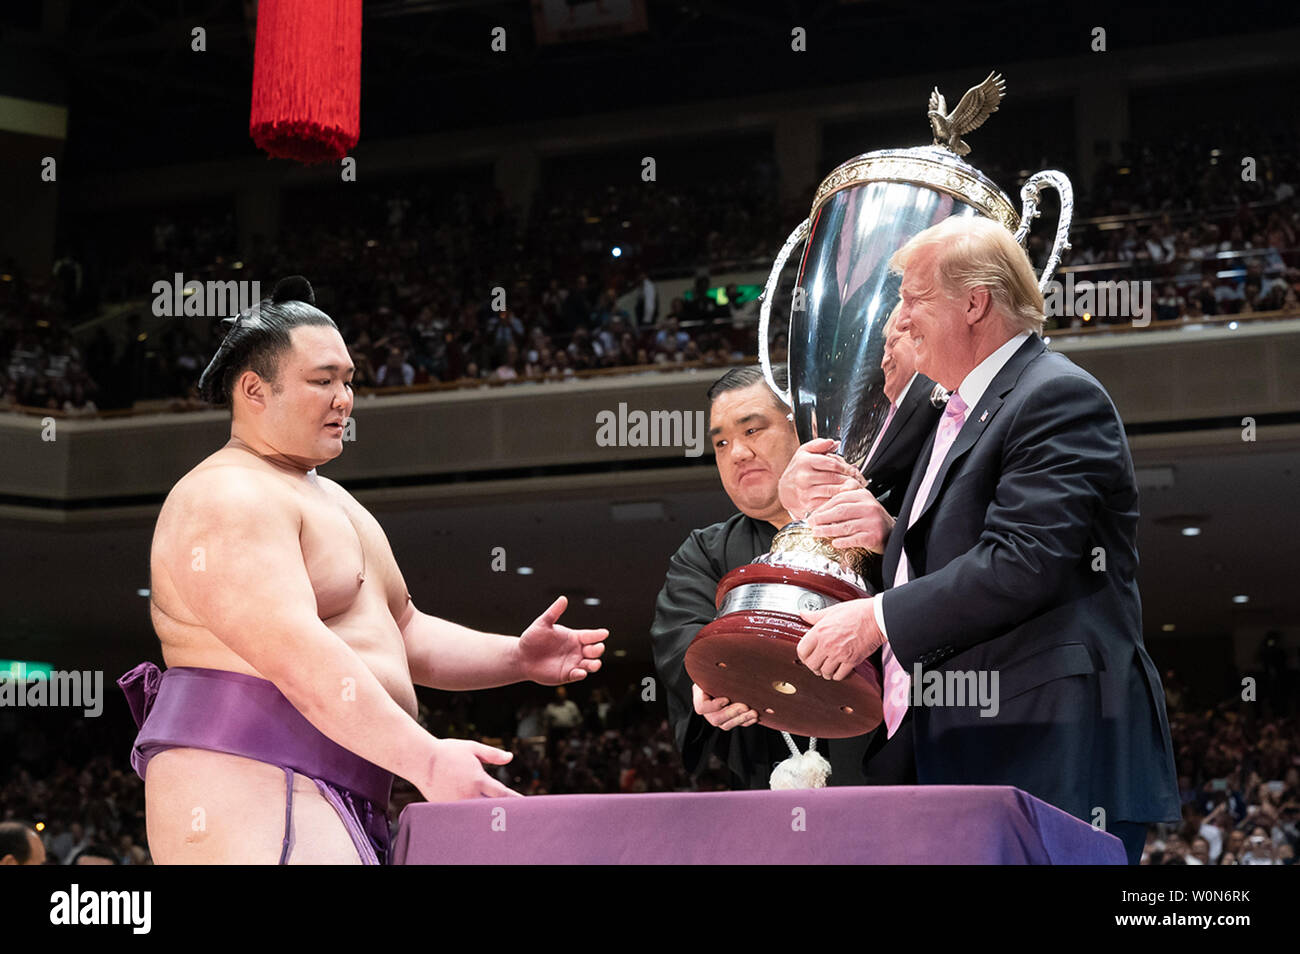 Presidente Trump, uniti dal Giappone il Primo Ministro Shinzo Abe, assiste il Sumo Grand Championship e partecipa il 27 maggio 2019, nella presentazione dei trofei alla manifestazione culturale al Ryogoku Kokugikan Stadium di Tokyo. White House Foto di Andrea Hanks/UPI Foto Stock